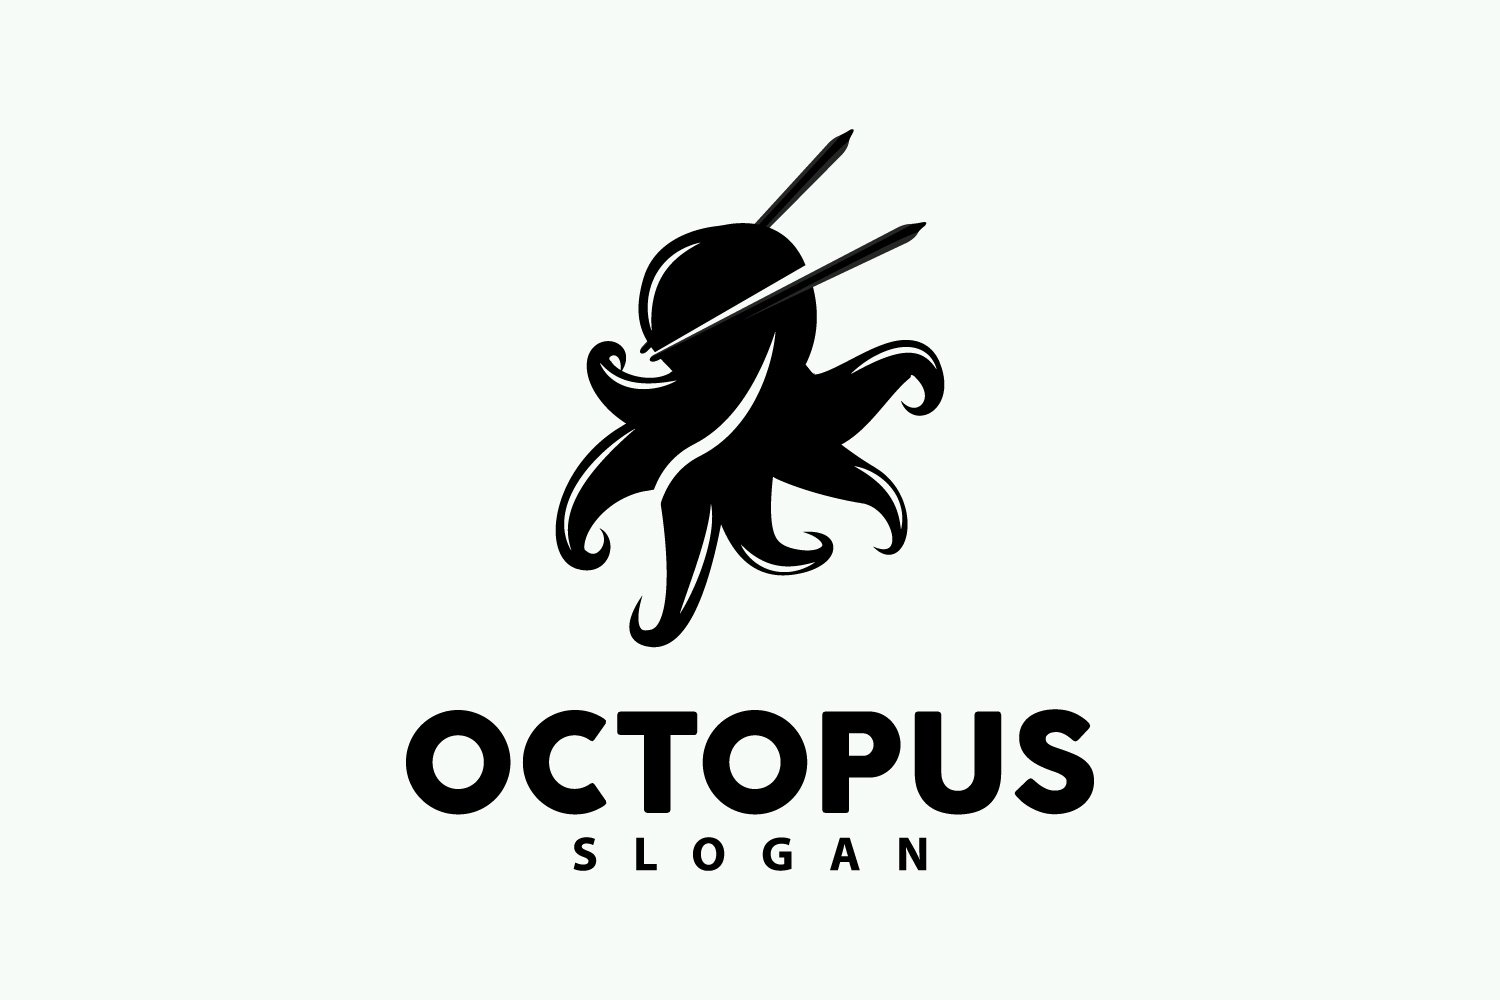 Octopus Logo Old Retro Vintage DesignV8